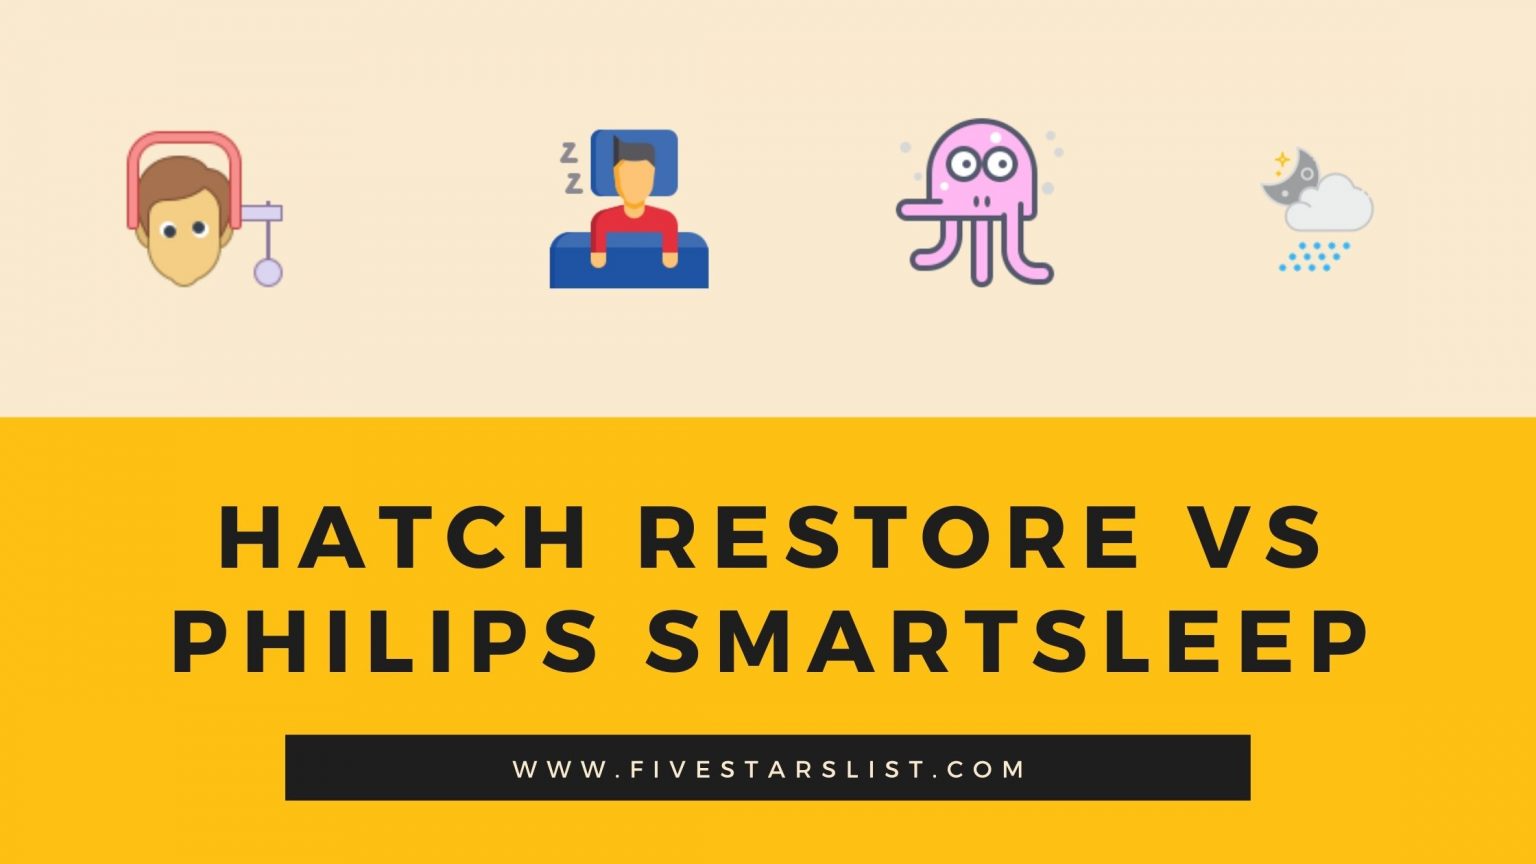 philips smartsleep vs hatch